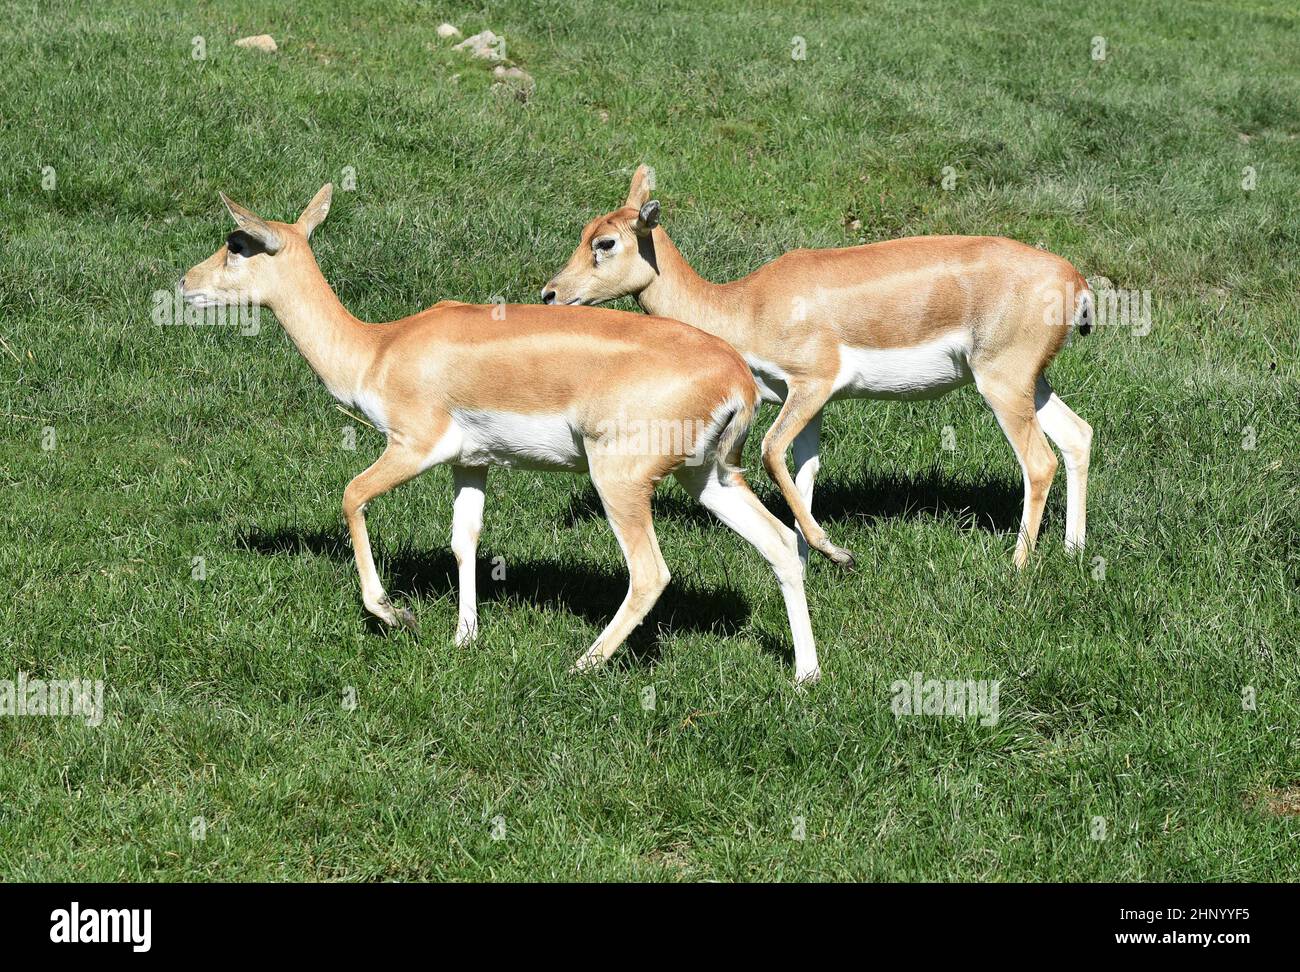 Die Hirschziegenantilope Mammalia reuminantia ist eine Antilopenart, die in Asien gefunden wird. Stockfoto